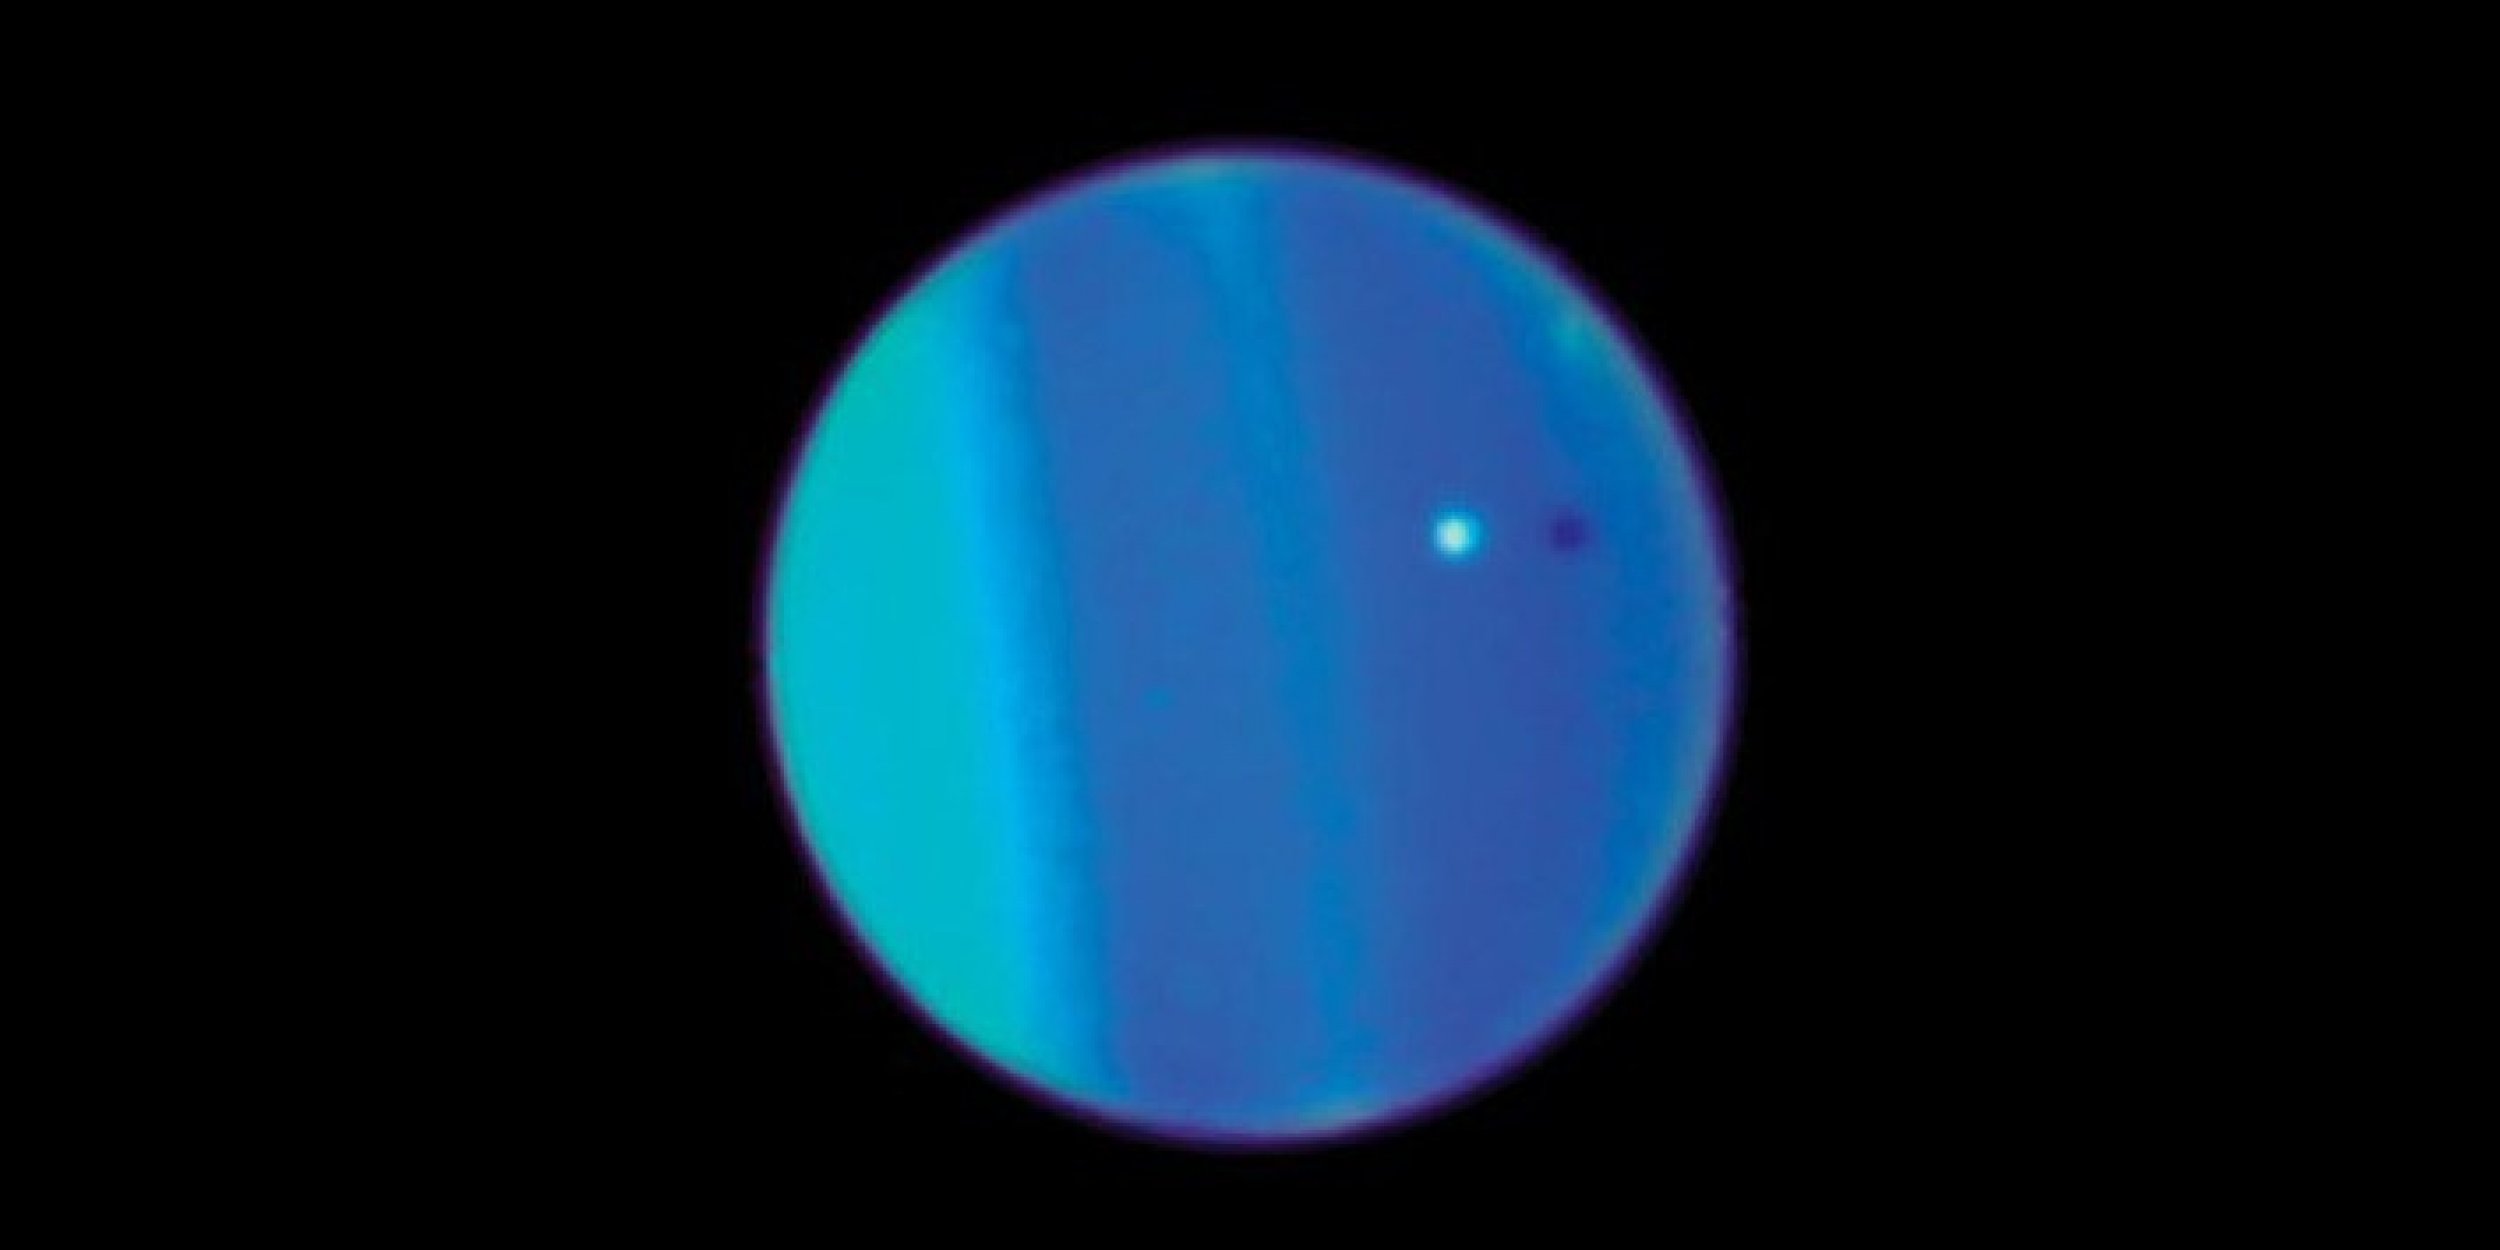 Sept. 25, 2011 - Uranus